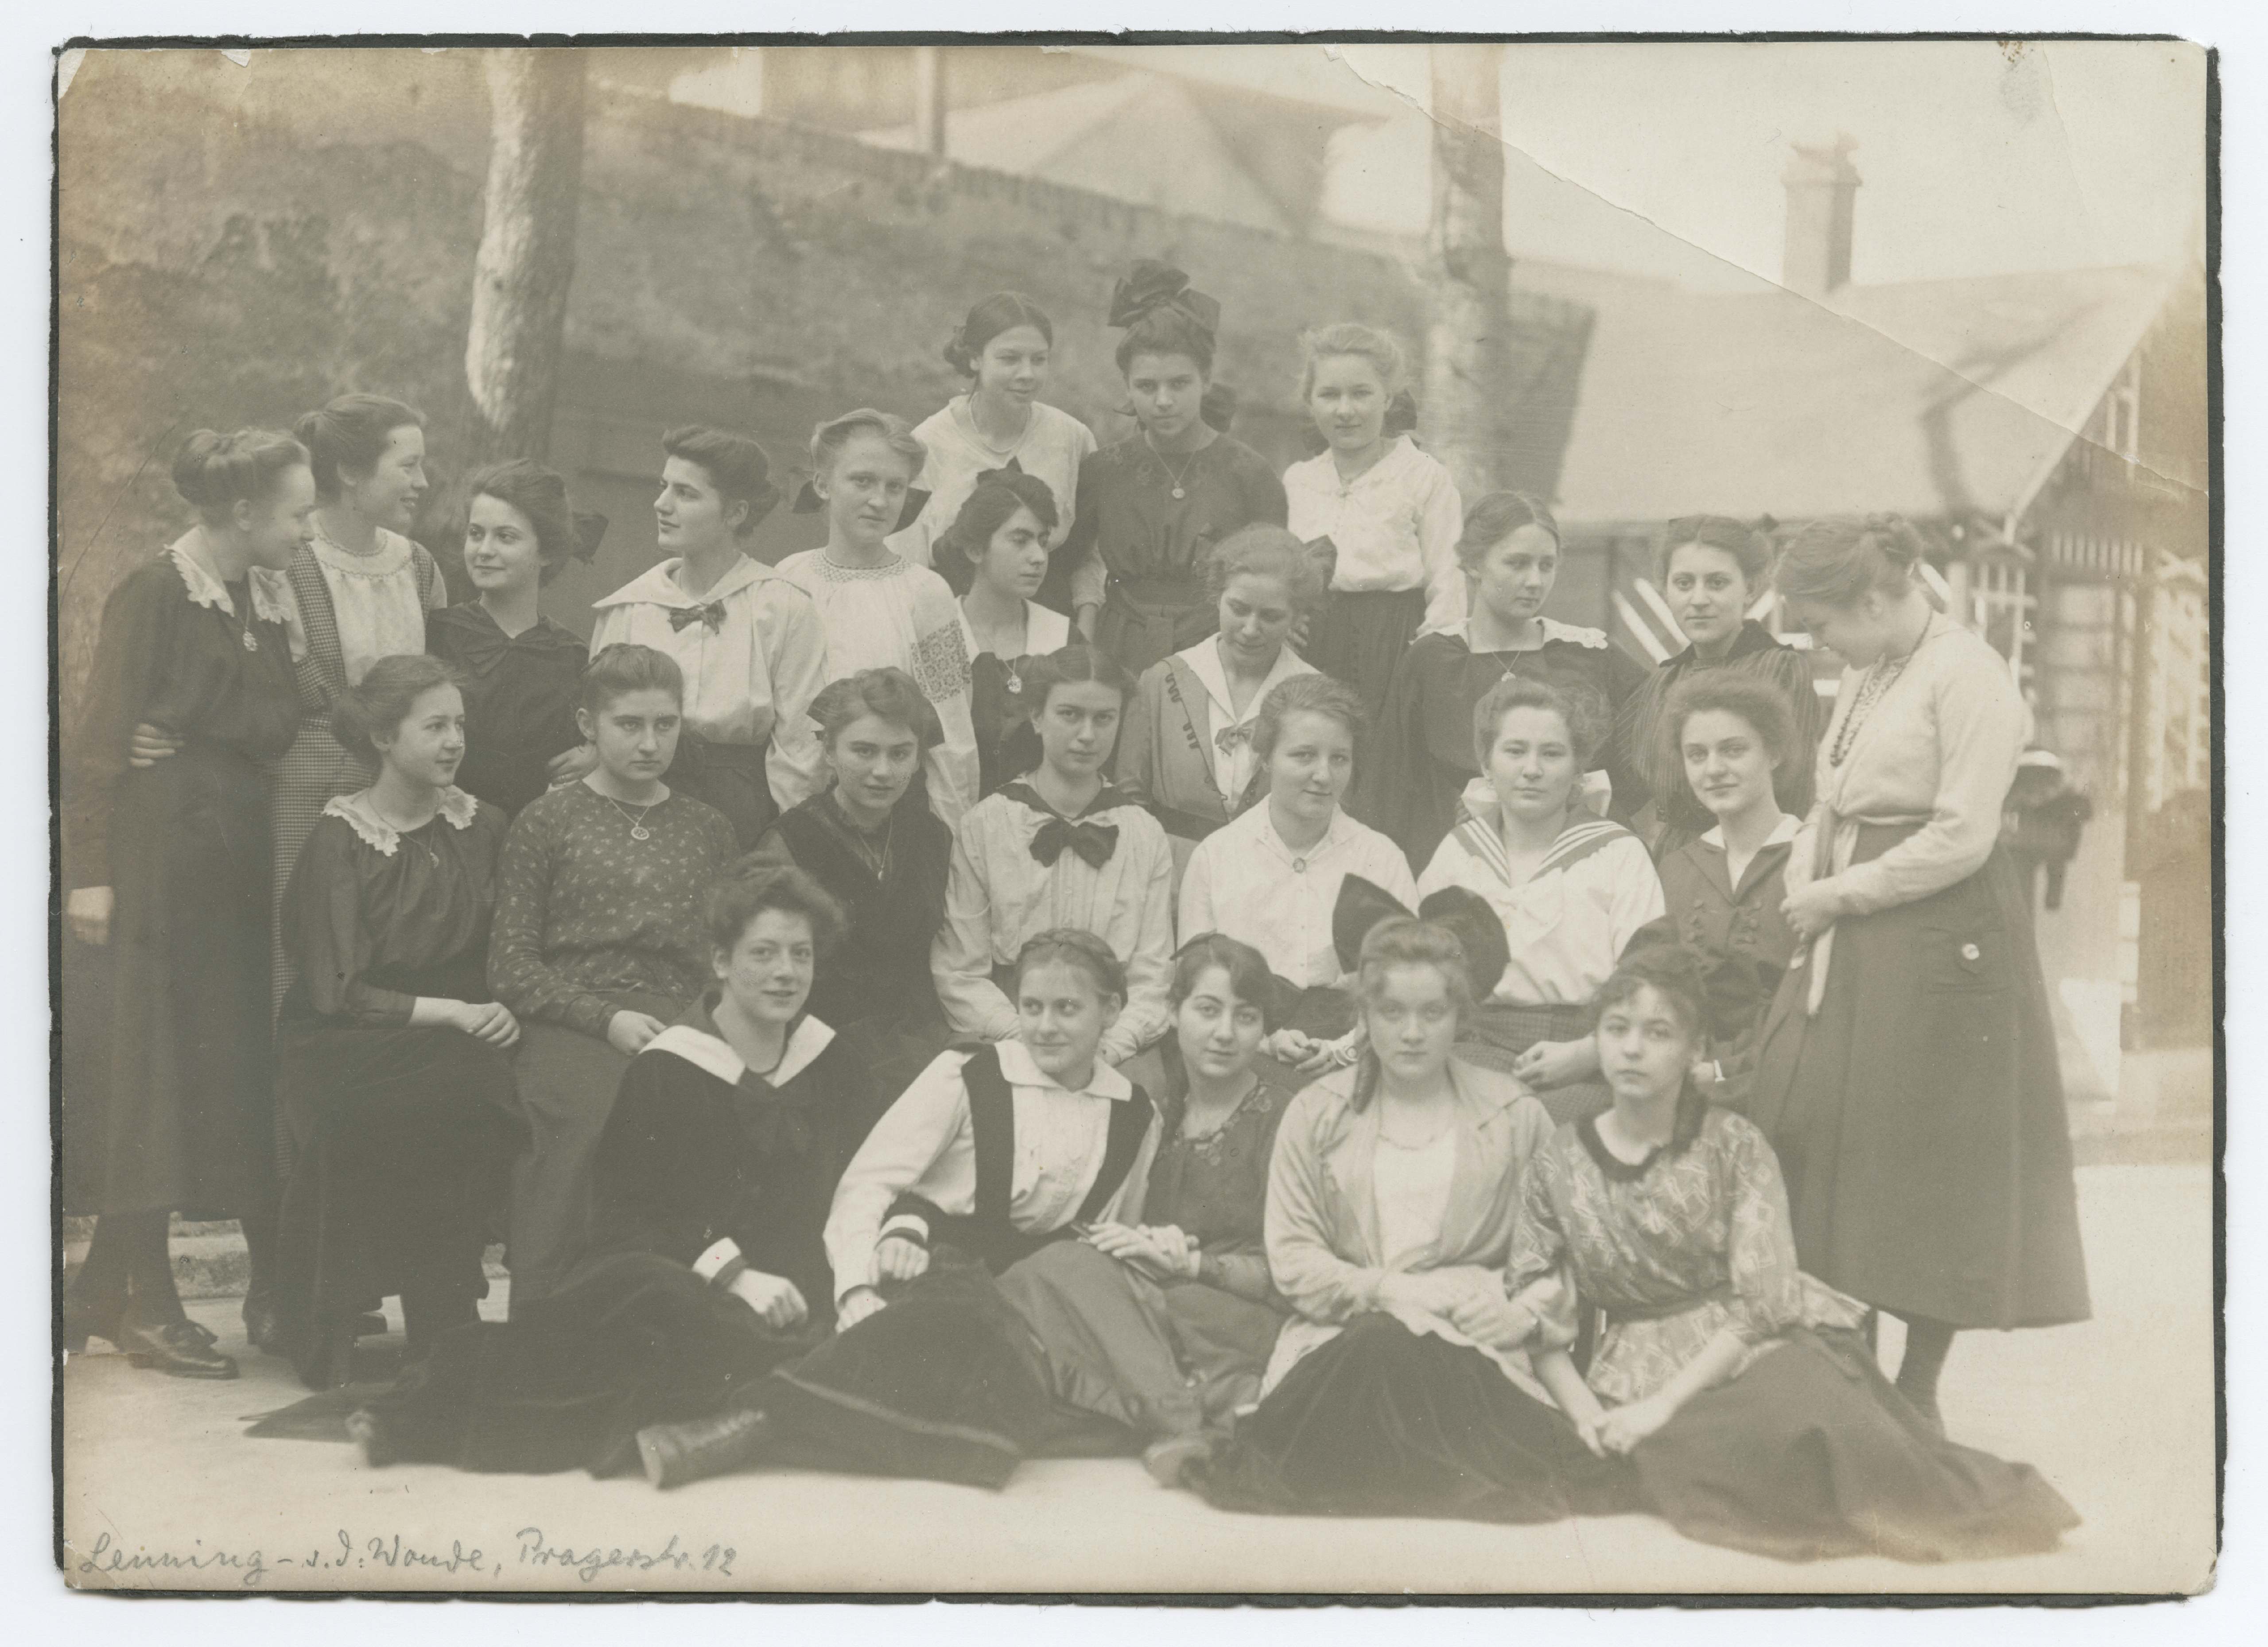 Class photo from the Viktoria Luisen School with Marlene Dietrich, Berlin-Wilmersdorf, 1918